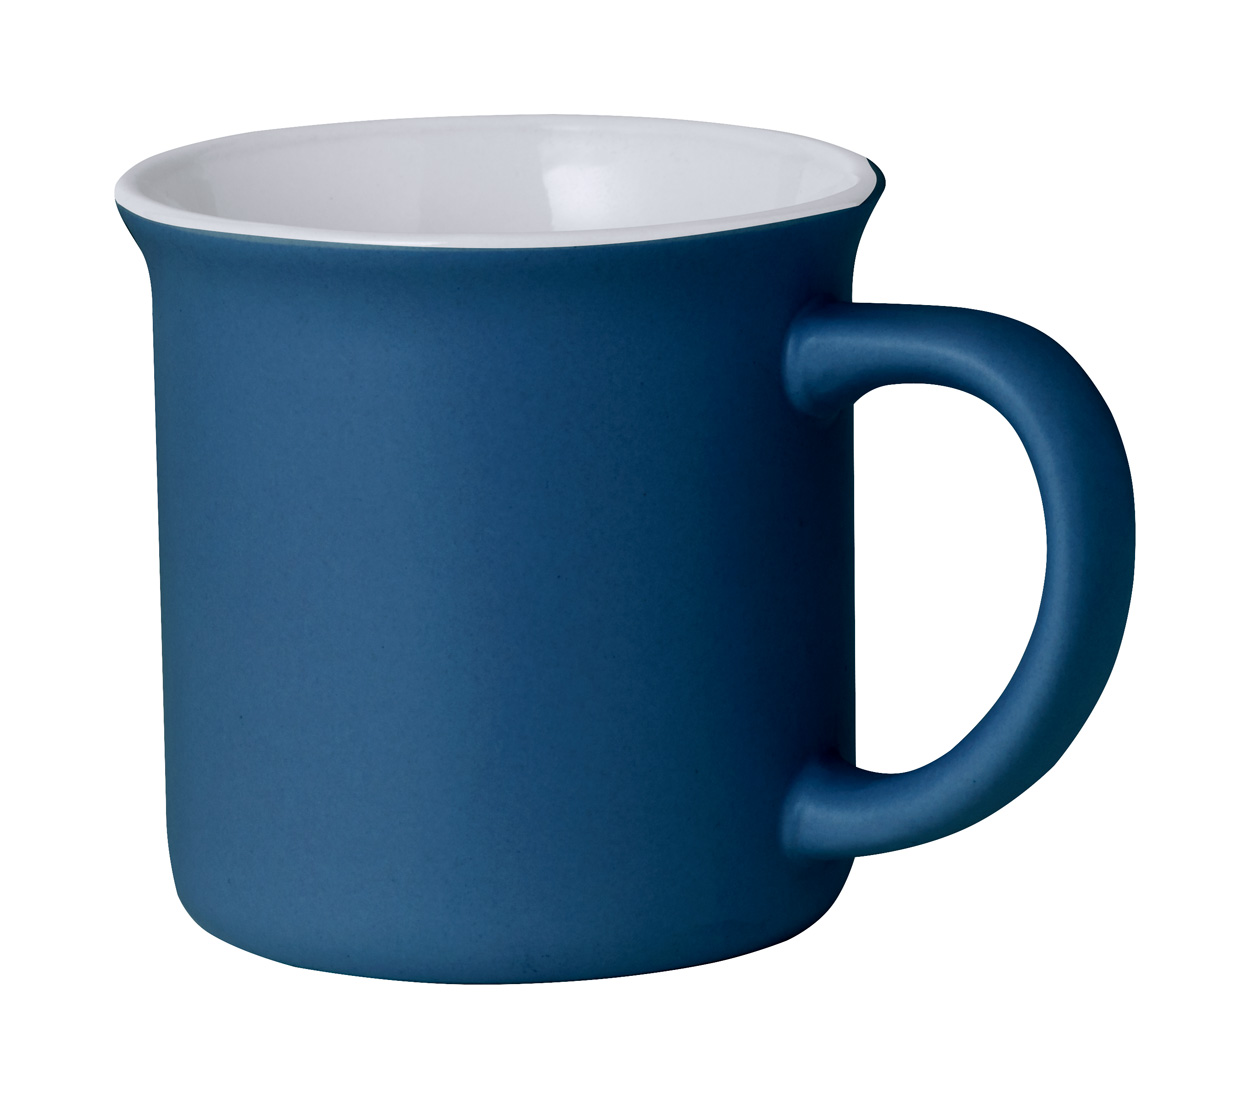 Hilman mug - blue